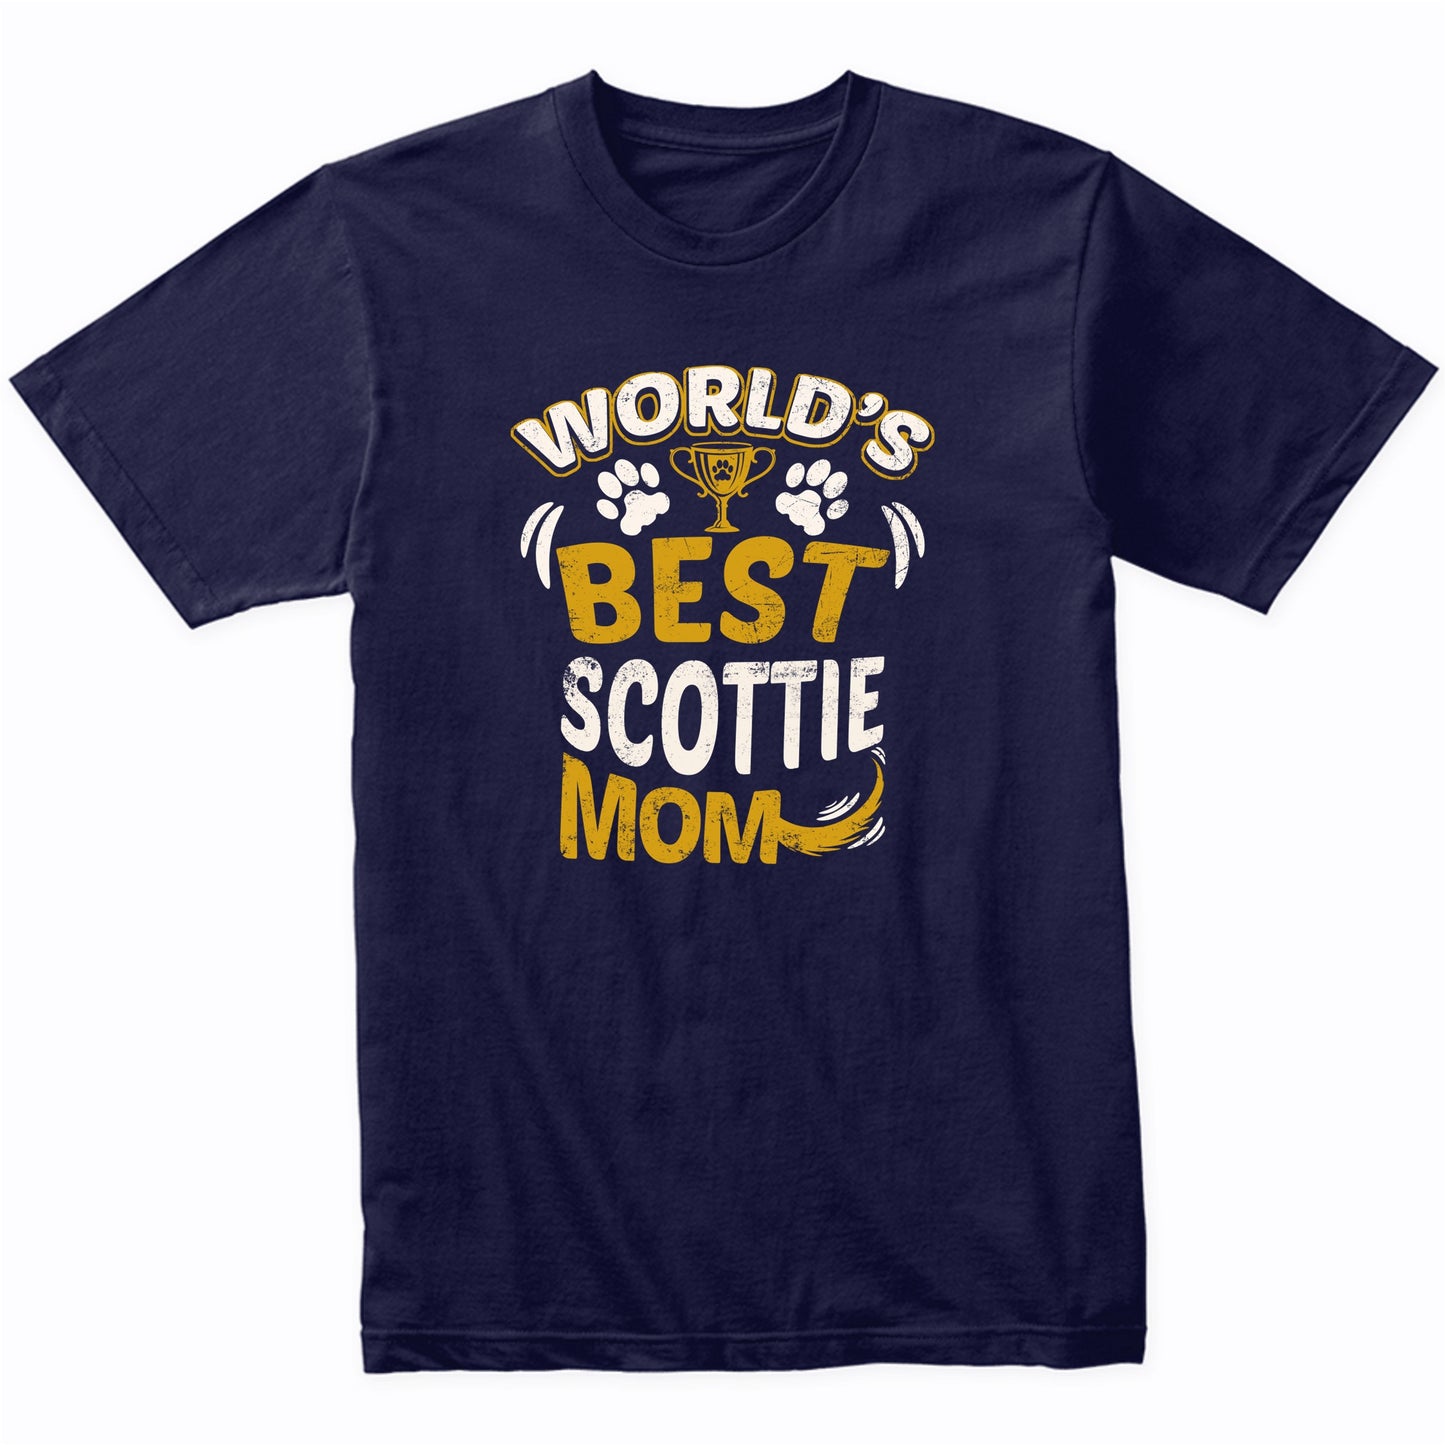 World's Best Scottie Mom Graphic T-Shirt